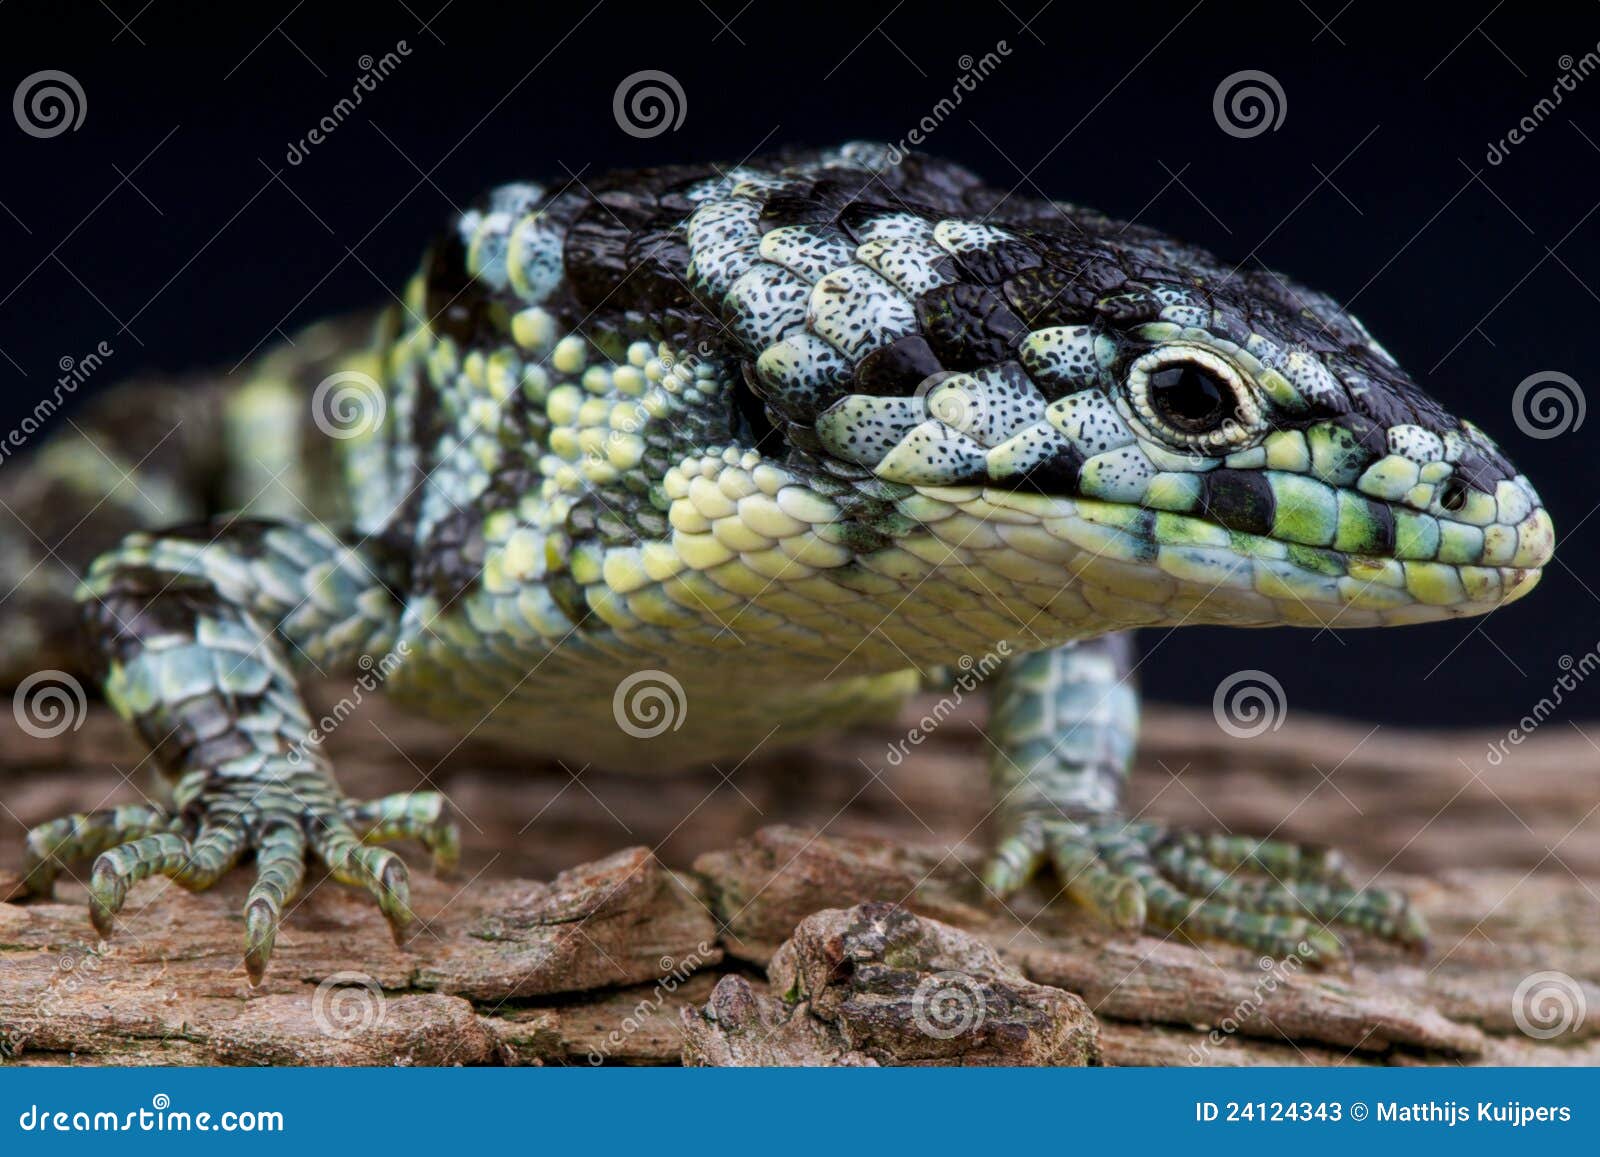 Alligator Lizard Pet